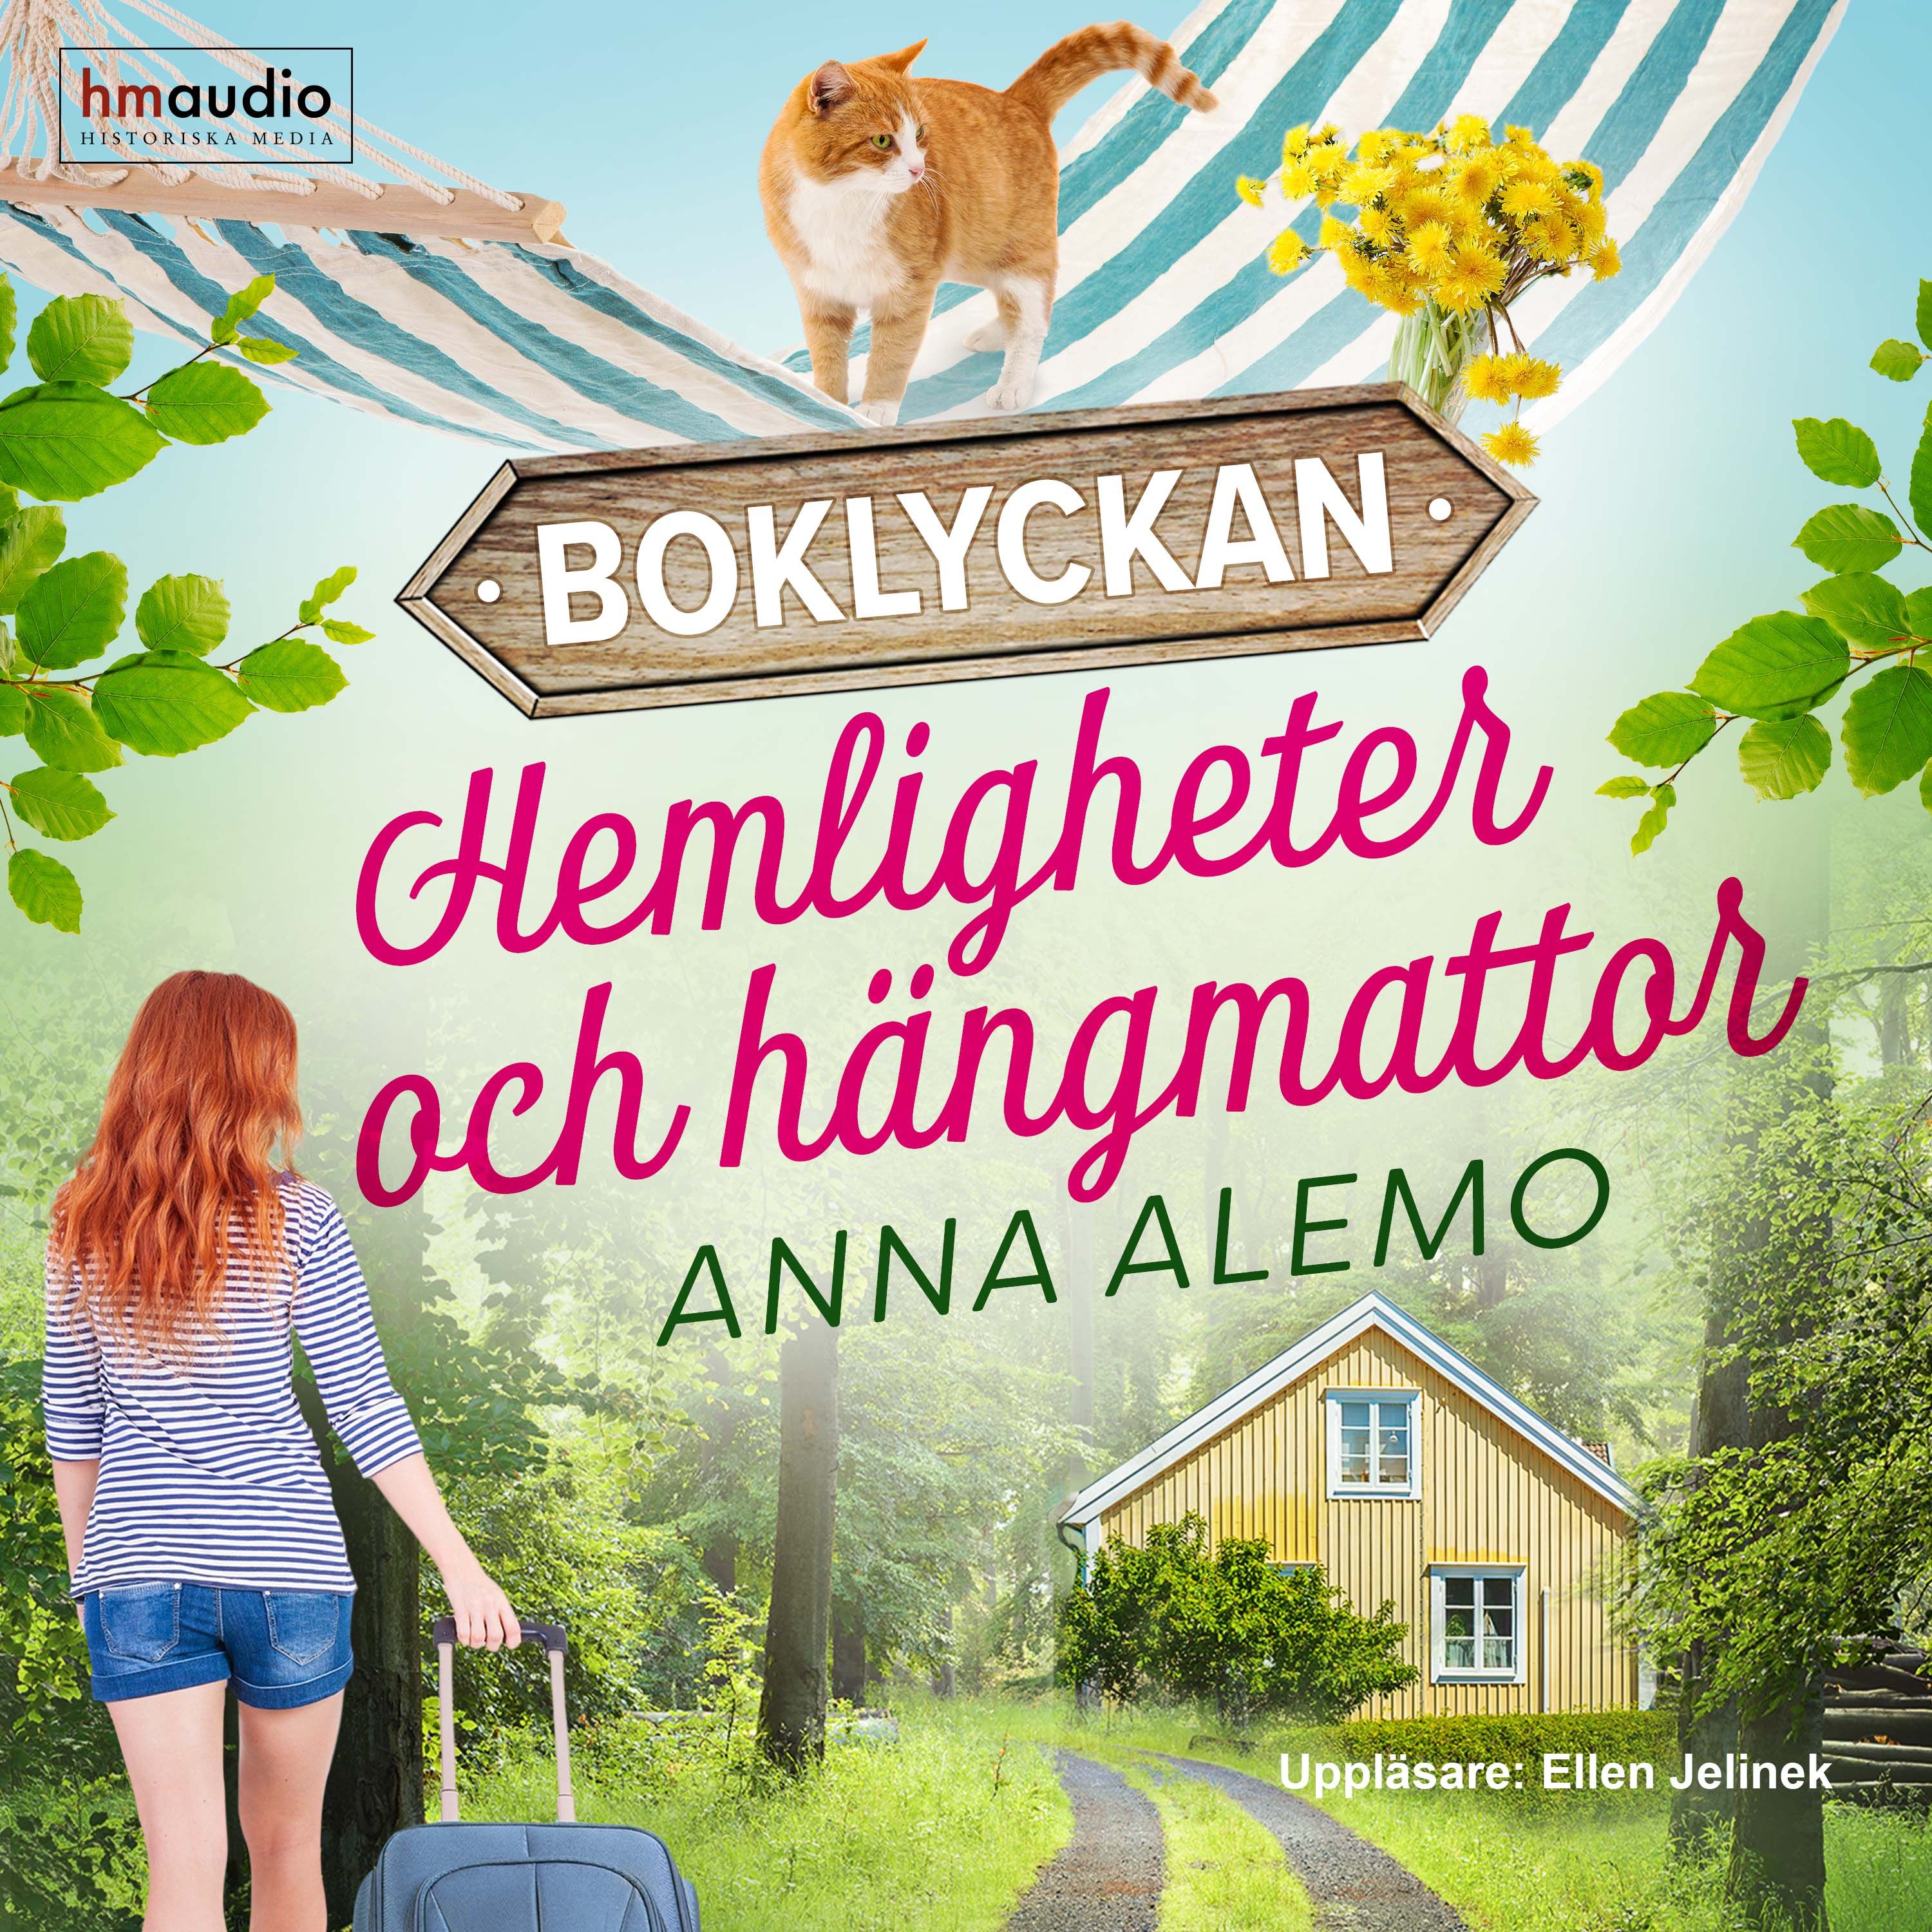 Hemligheter och hängmattor, audiobook by Anna Alemo